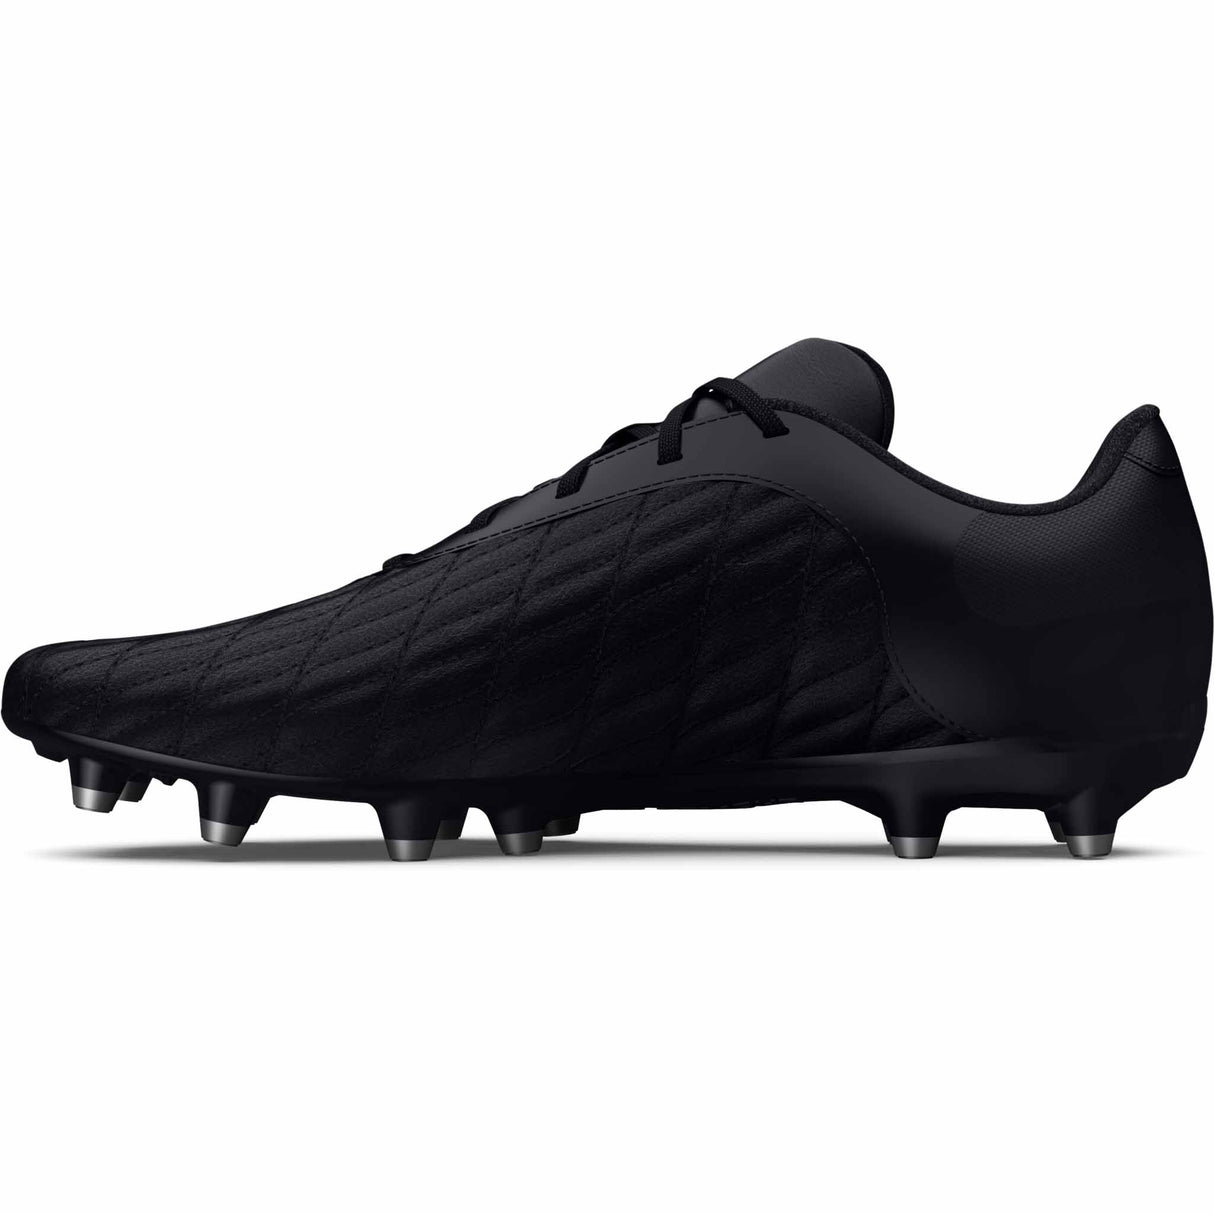 UA Magnetico Select 3.0 FG chaussures de soccer adulte lateral- noir / noir / argent métallique